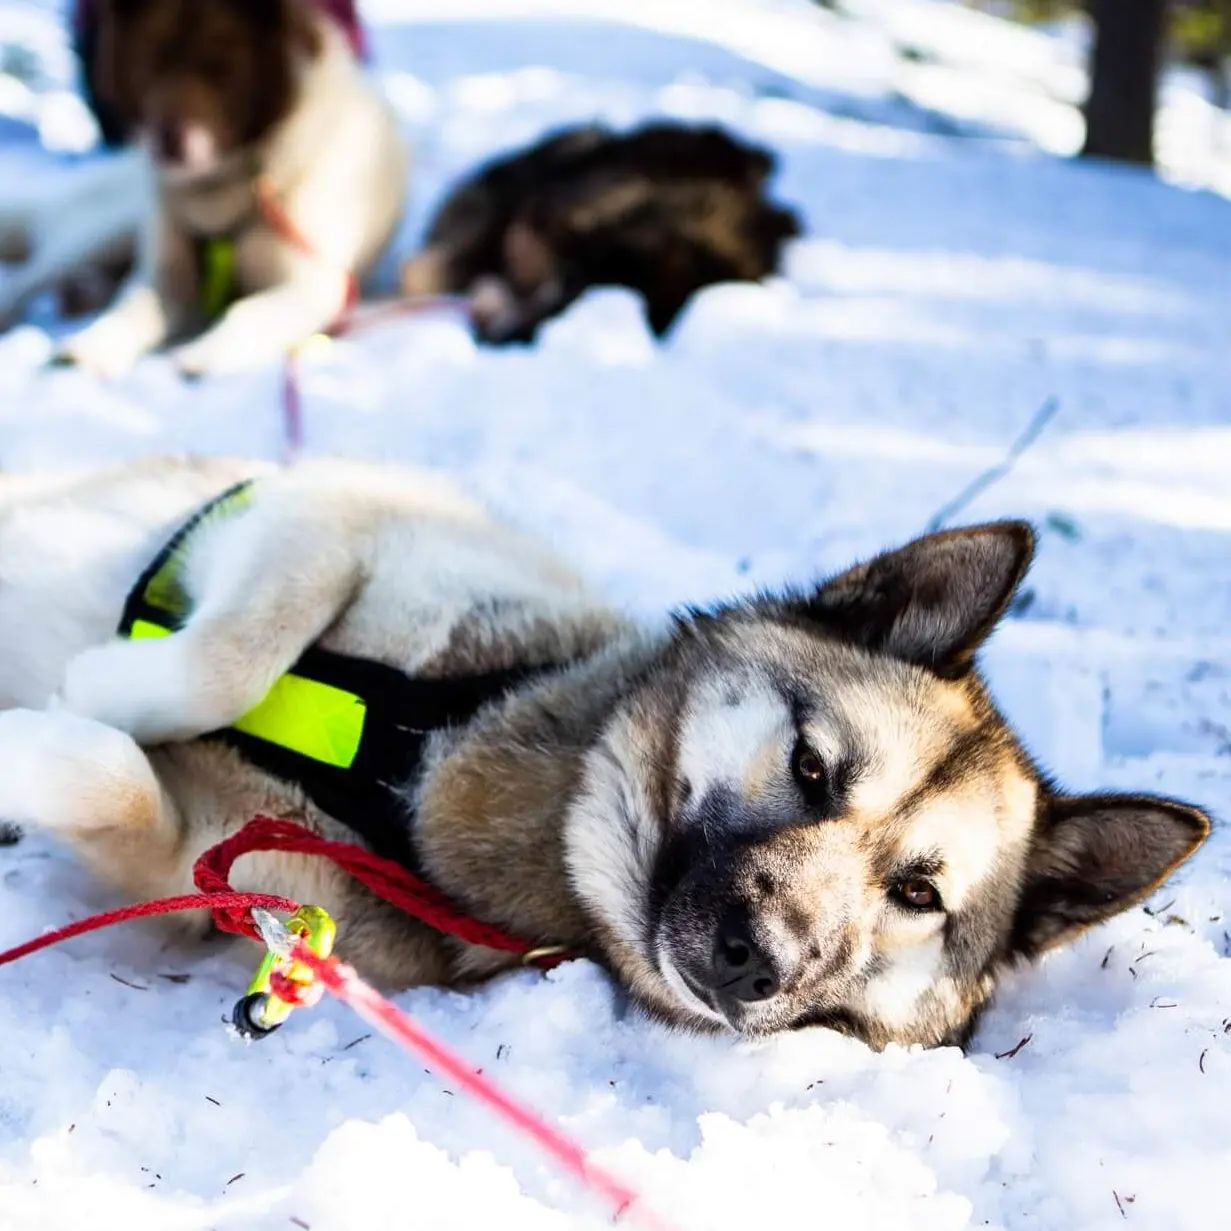 Les raids chiens de traineaux se remplissent vite et sont presque complets. Nous avons donc ouvert une nouvelle date du 6 au 13 janvier 2023 ! 

#flarkenadventure #suede #laponie #laponiesuedoise #sweden #lapland #swedishlapland #visitsweden #visitskelleftea #vasterbotten #chiendetraineau #chiensdetraineaux #sleddog #dogsledding #happydog #dogofinstragram #visitnorsjö